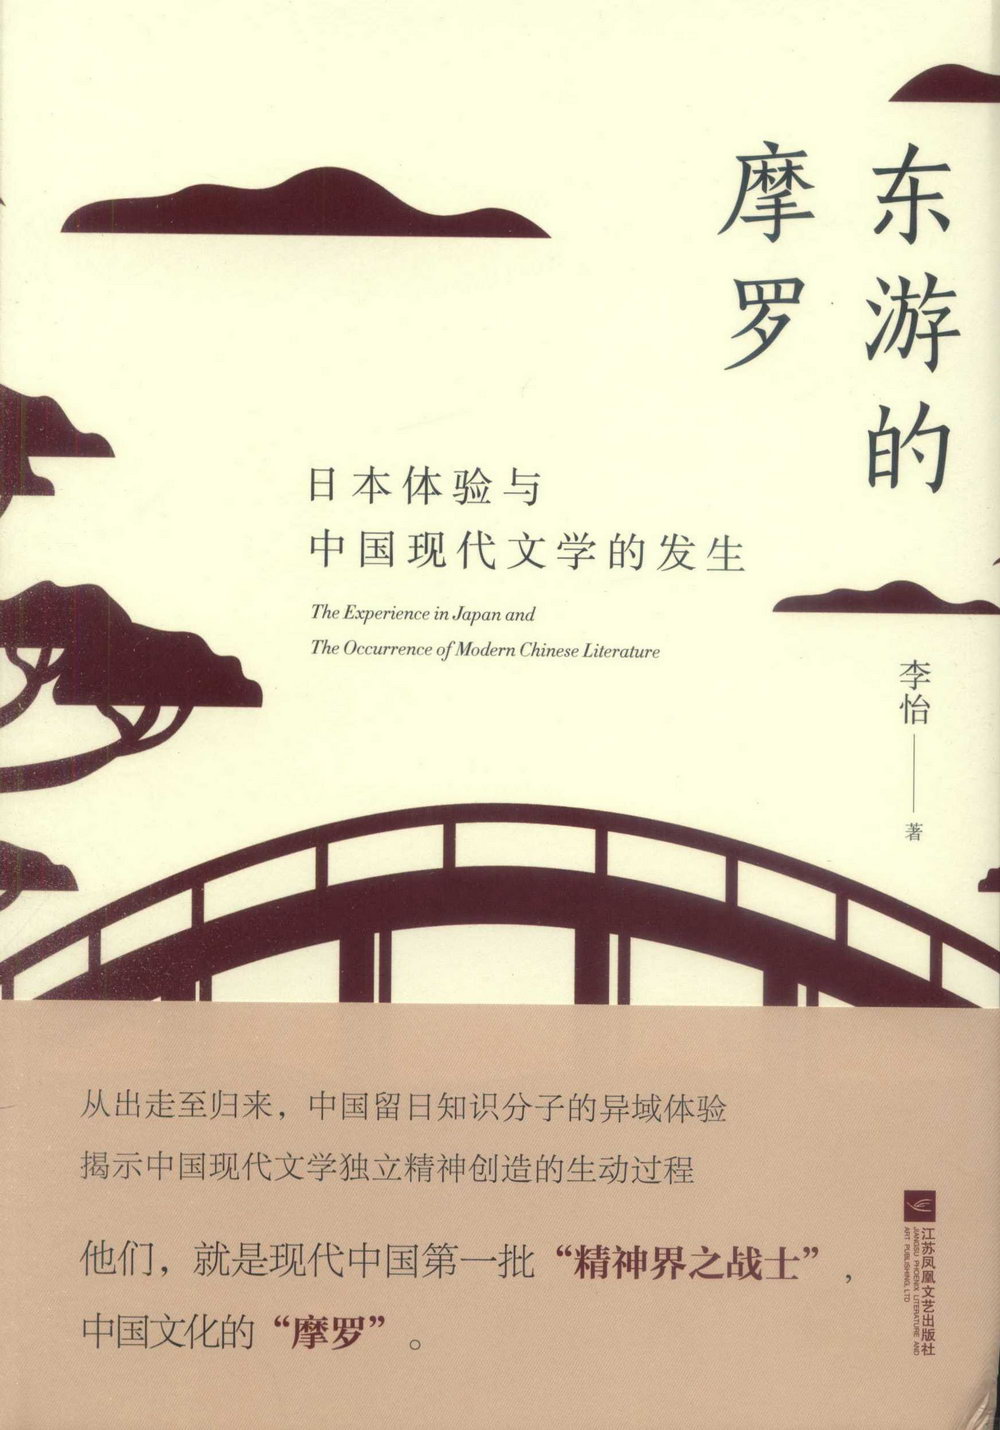 東遊的摩羅：日本體驗與中國現代文學的發生